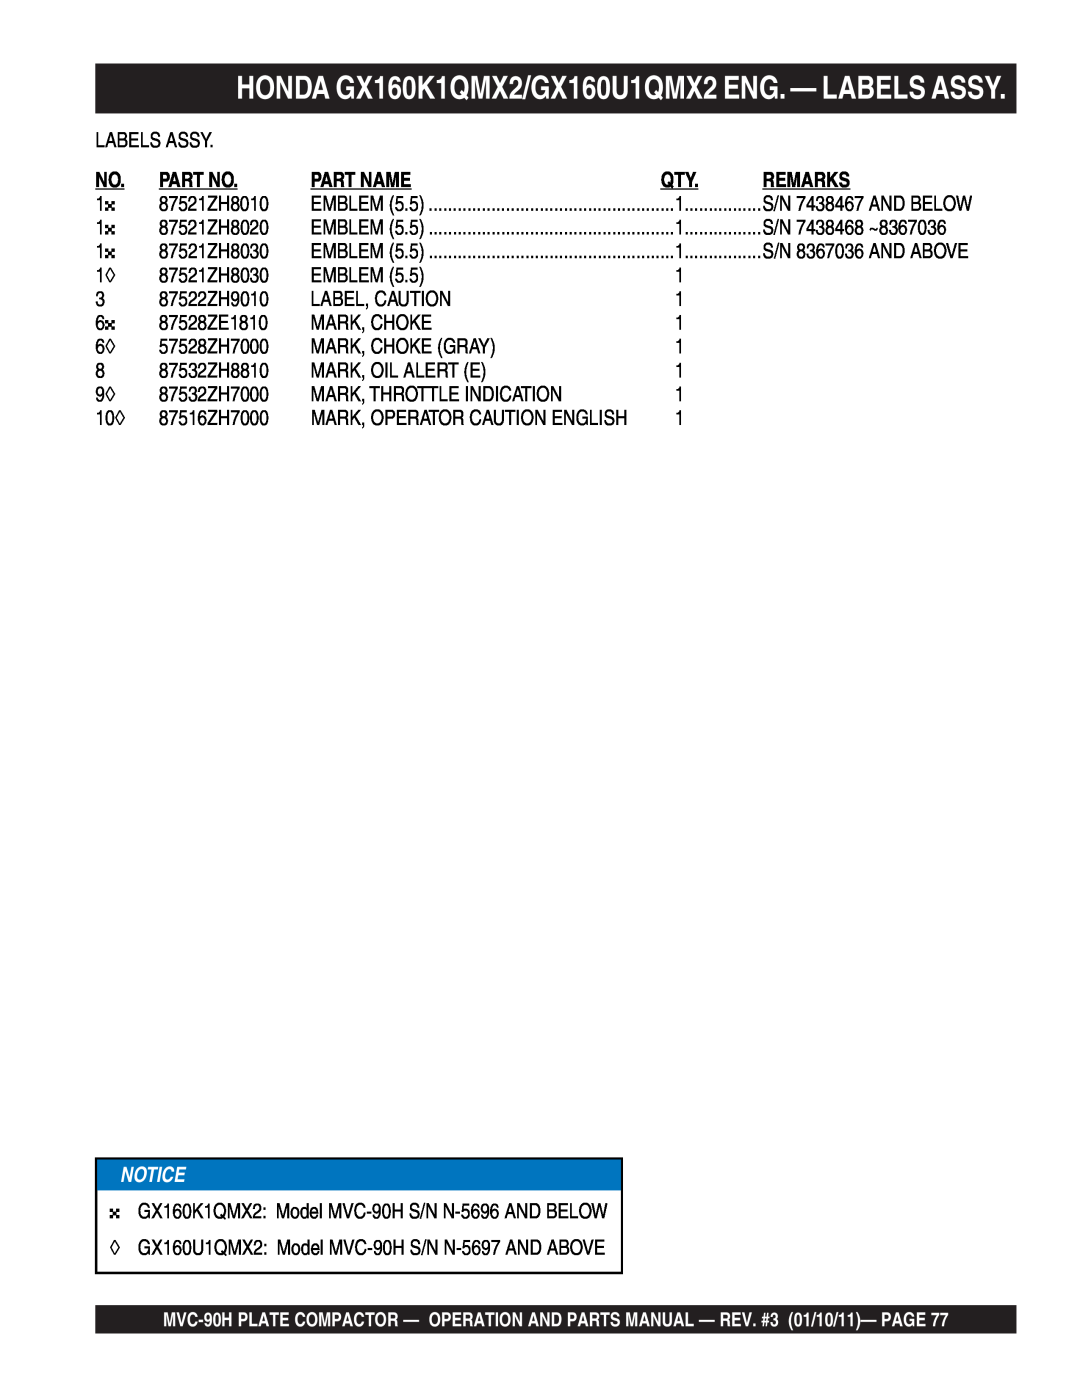 Multiquip MVC-90H manual HONDA GX160K1QMX2/GX160U1QMX2 ENG. - LABELS ASSY, Part Name, Remarks 